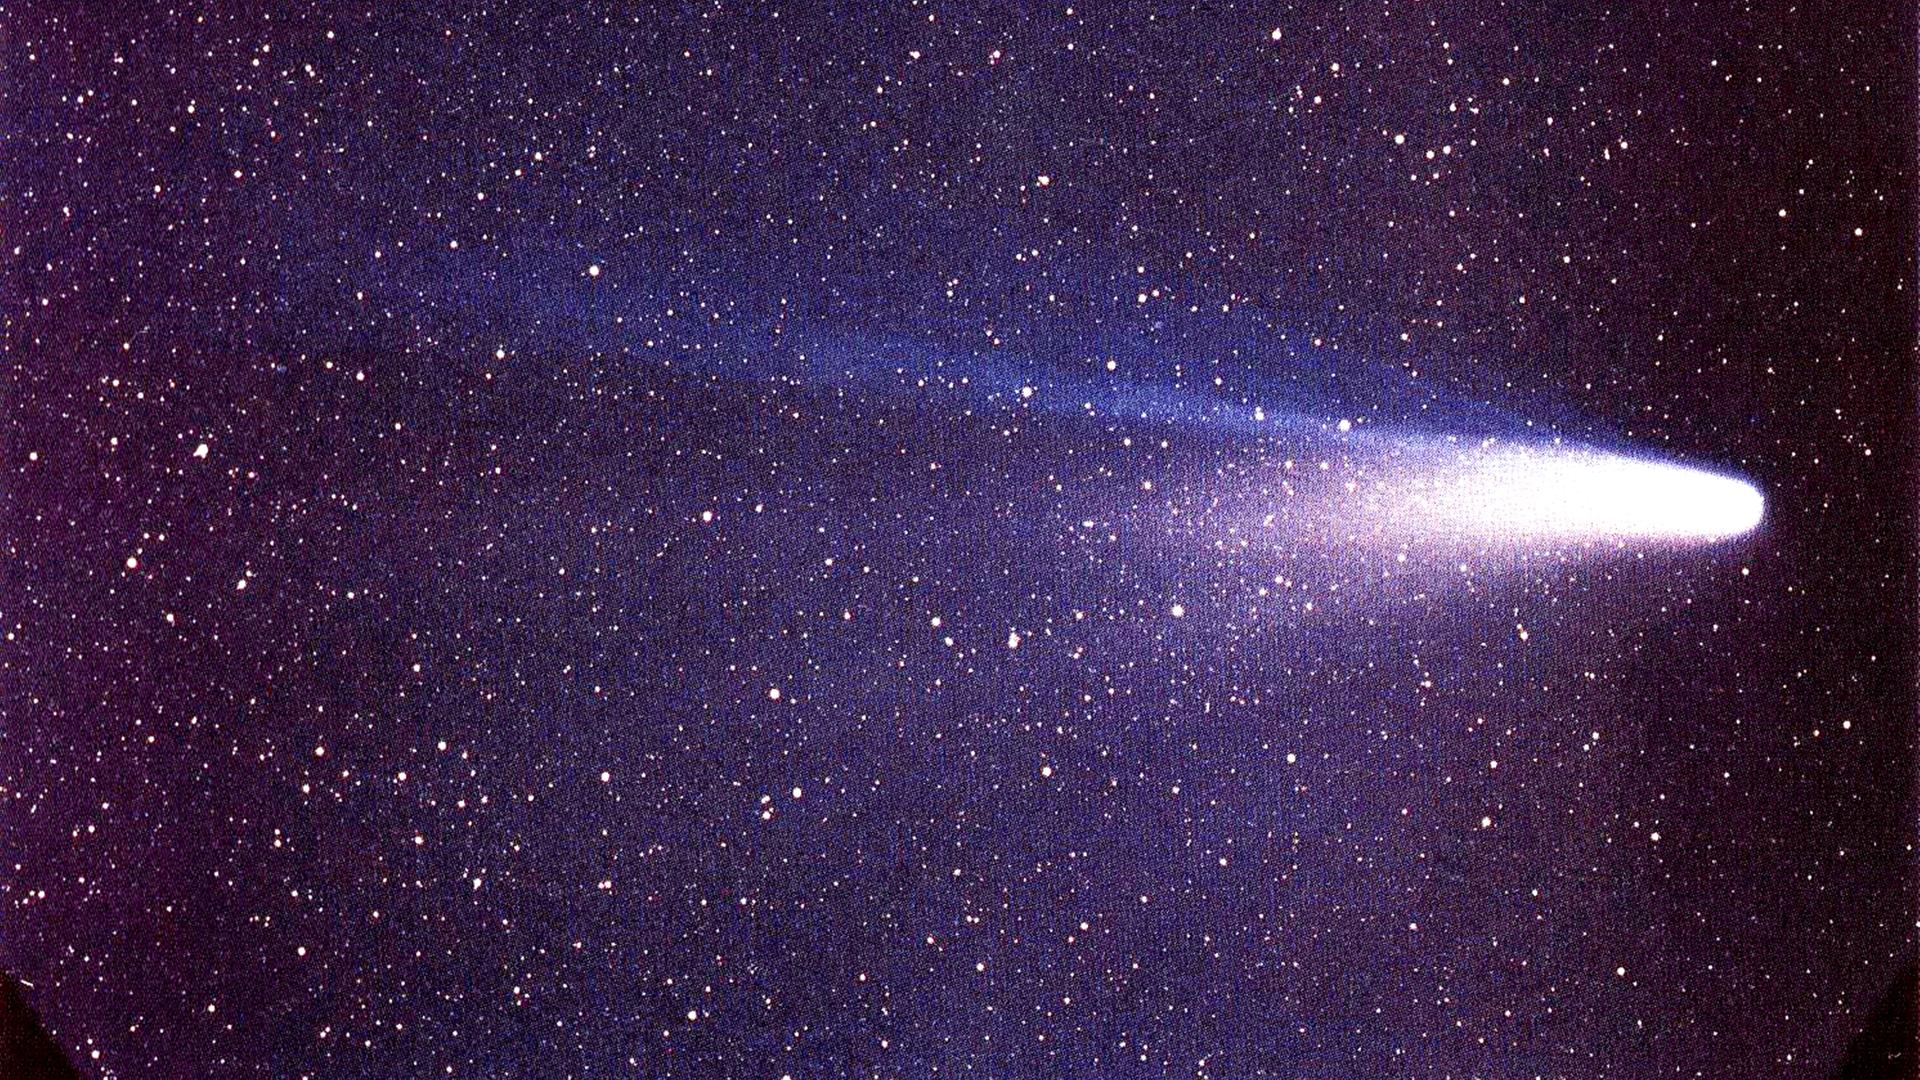 Komet Halley bei seiner bisher letzten Wiederkehr 1986